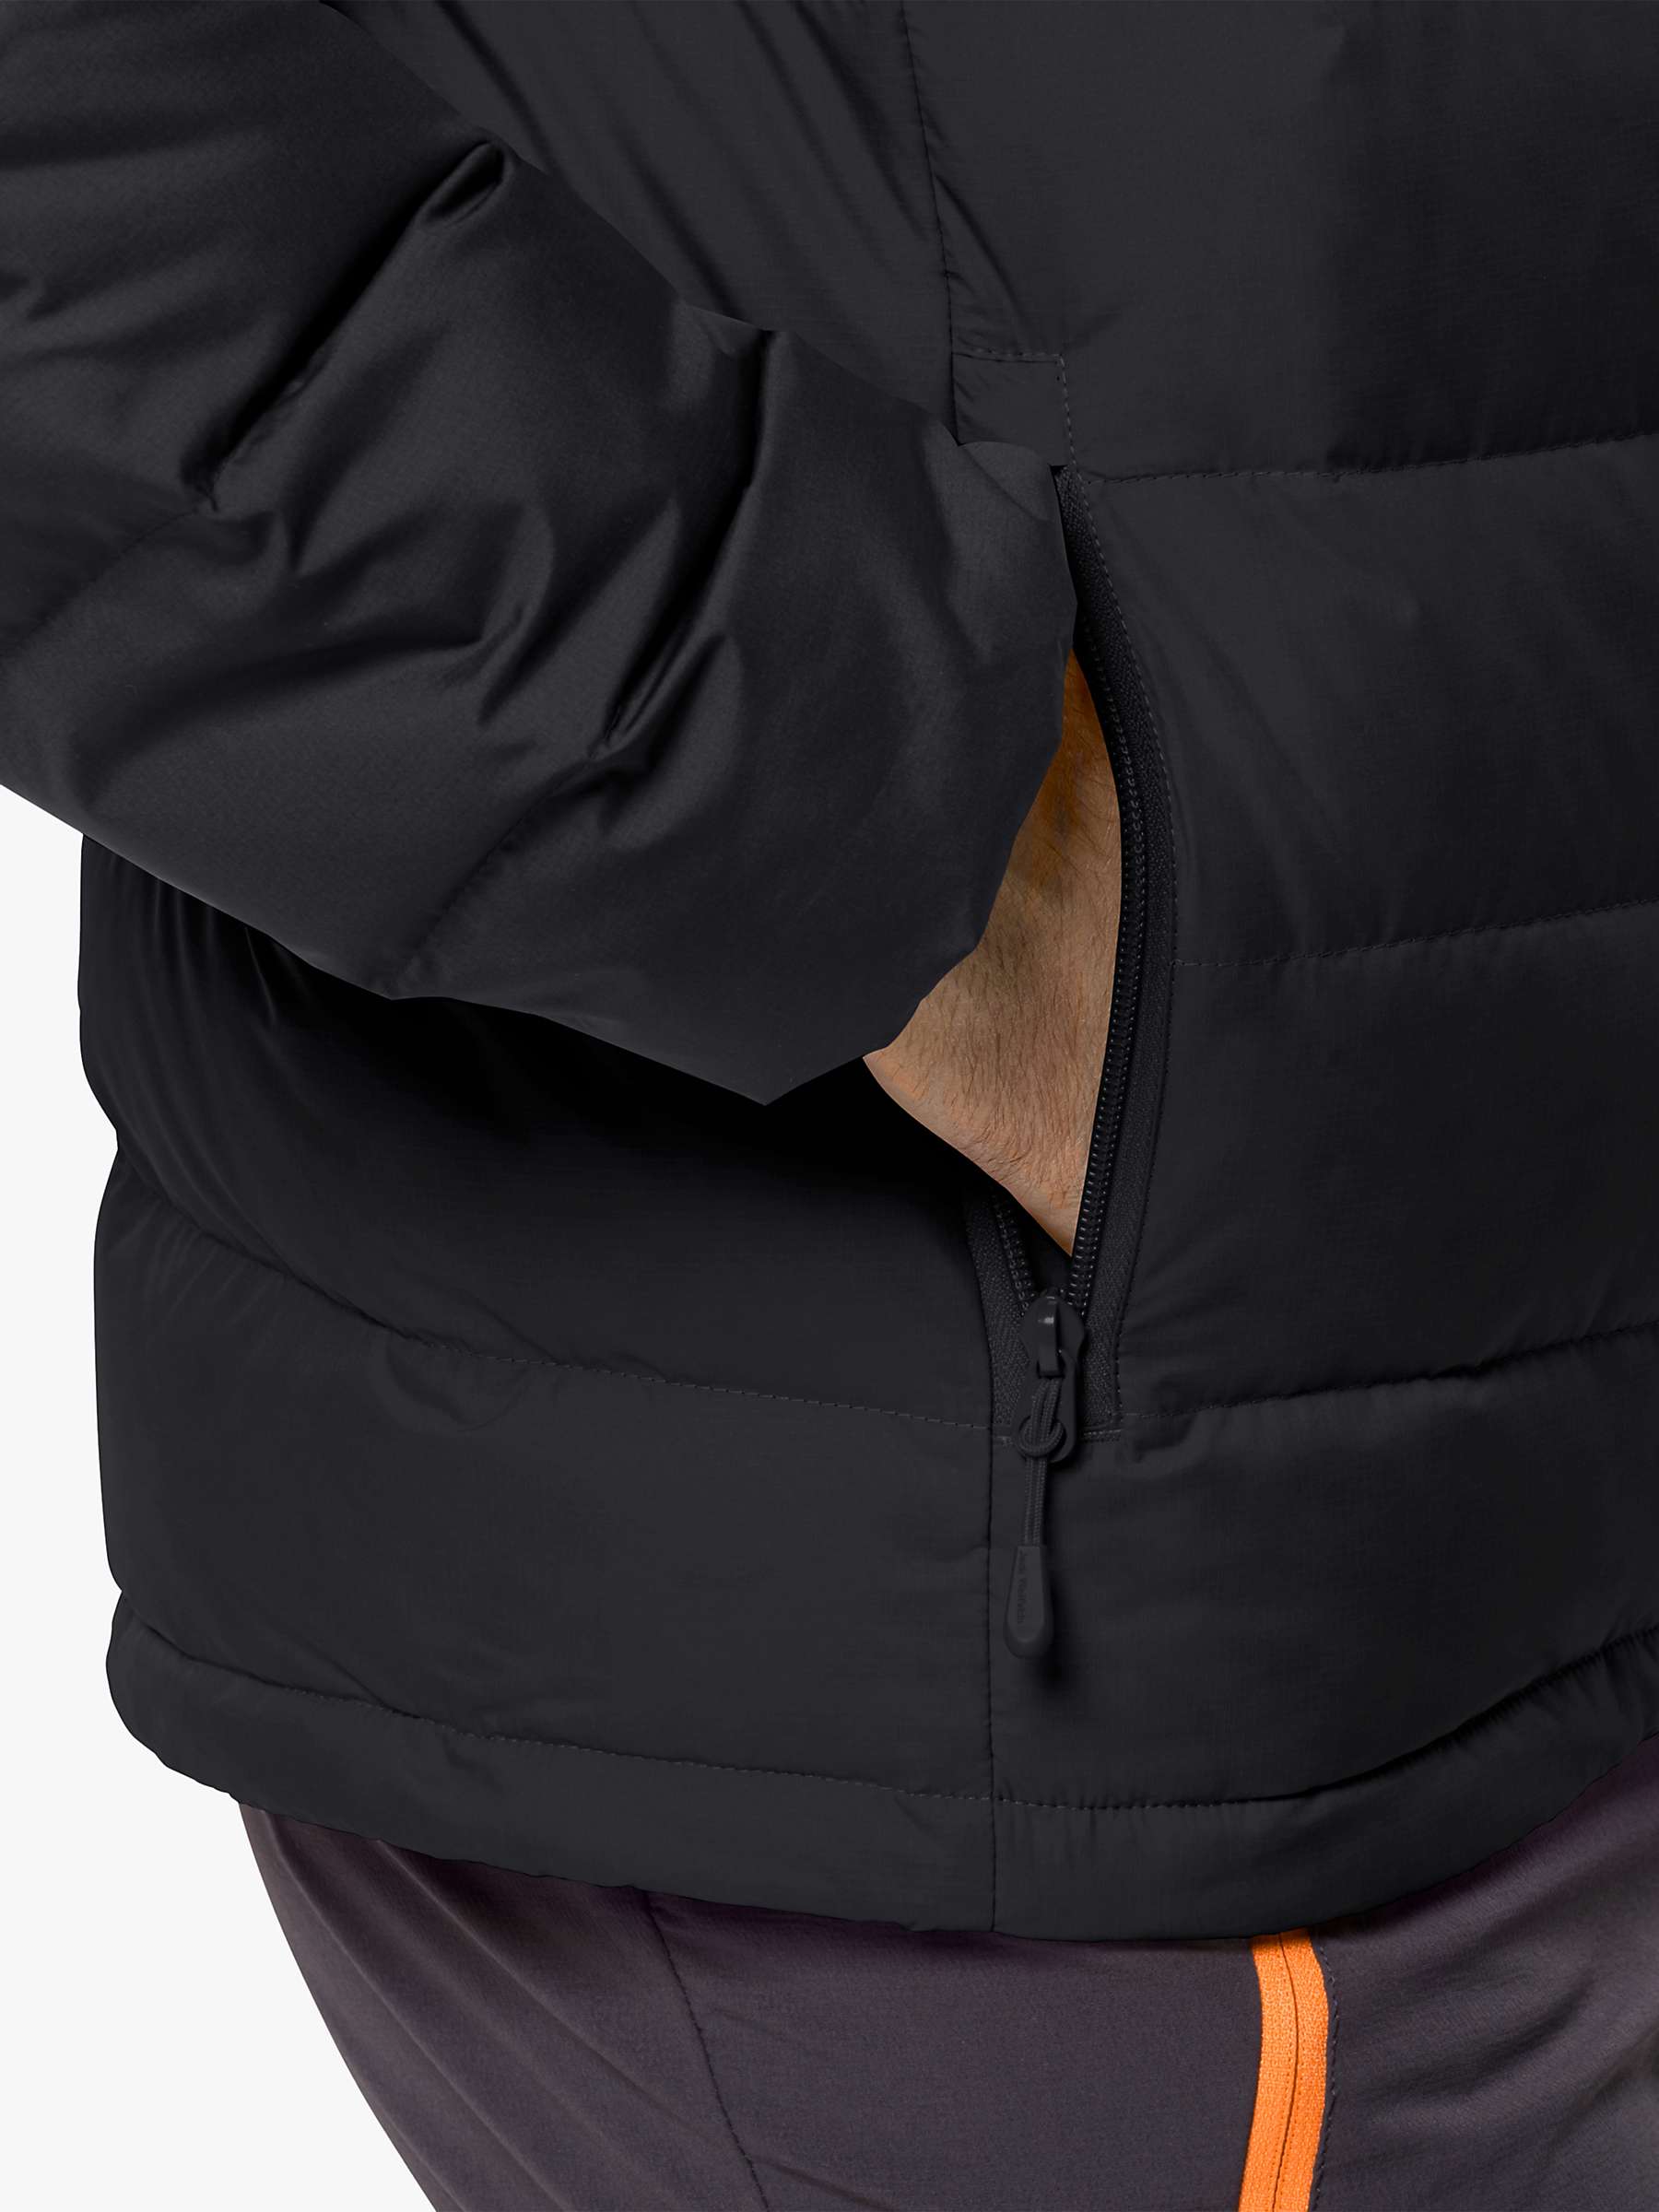 Buy Jack Wolfskin Ather Down Men's Hooded Jacket, Black Online at johnlewis.com